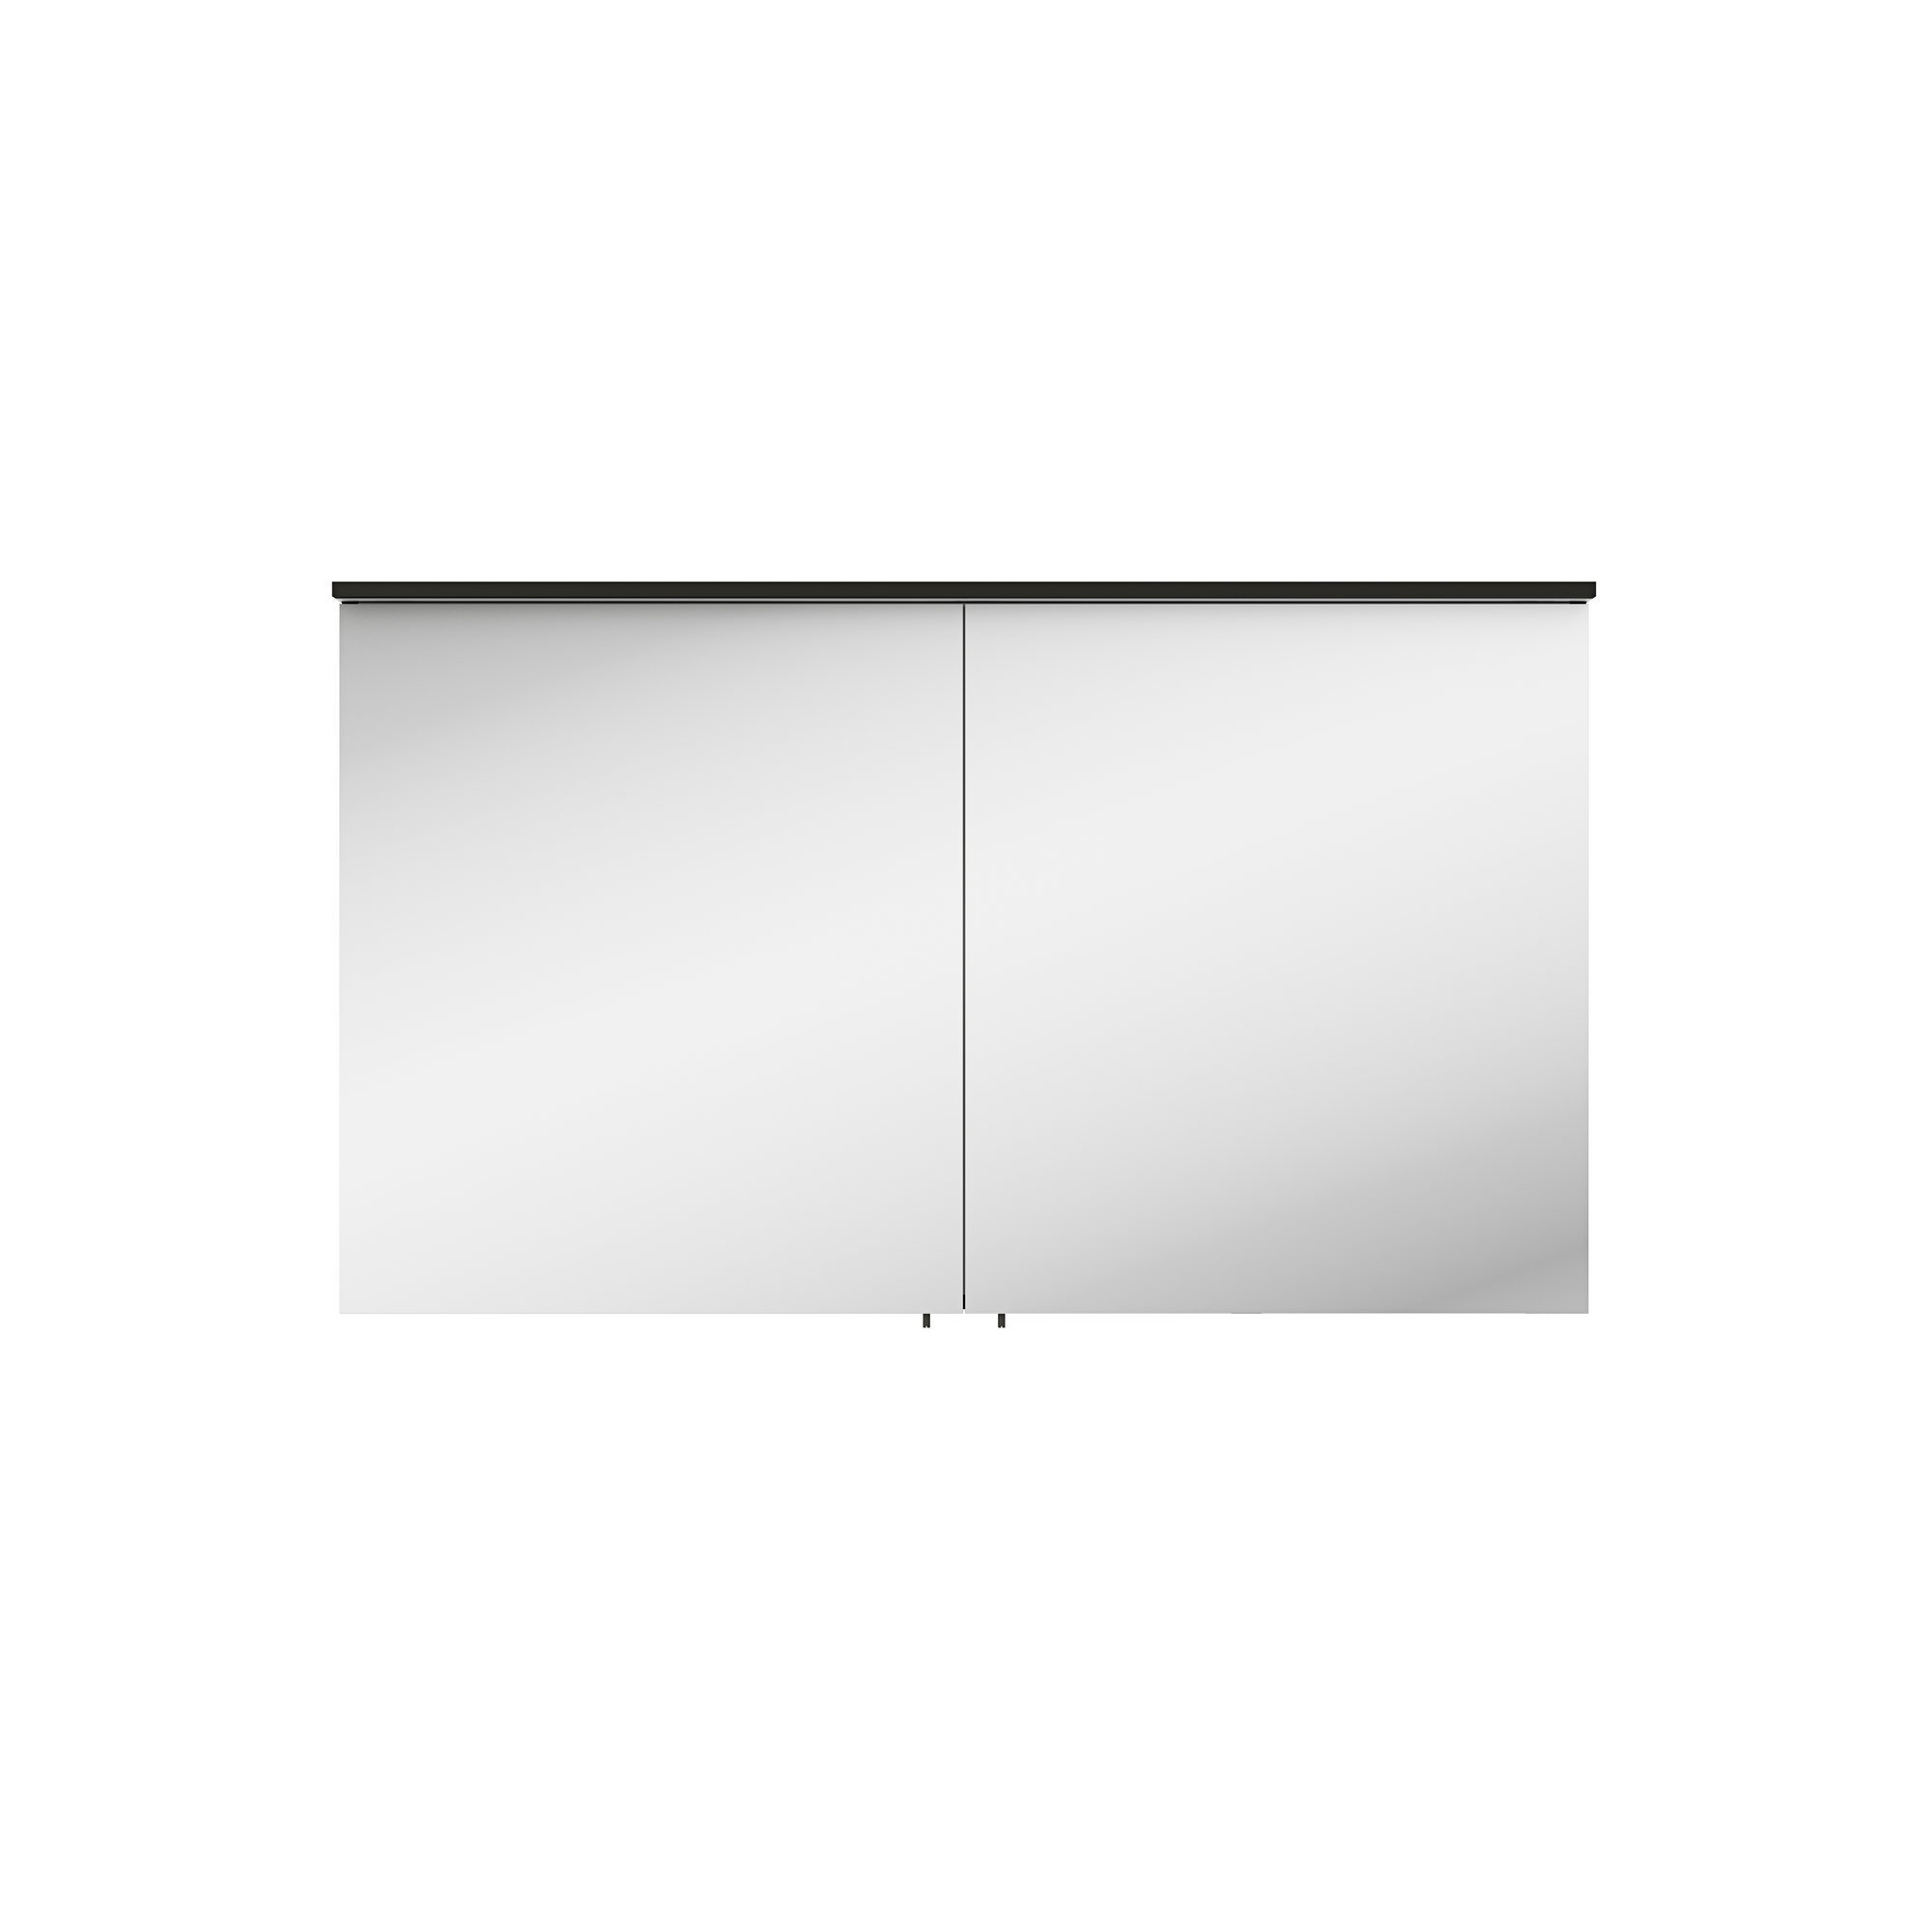 Spiegelschrank 'OPTIpremio 2510clarus' schwarz 120 x 69,6 x 17,6 cm + product picture